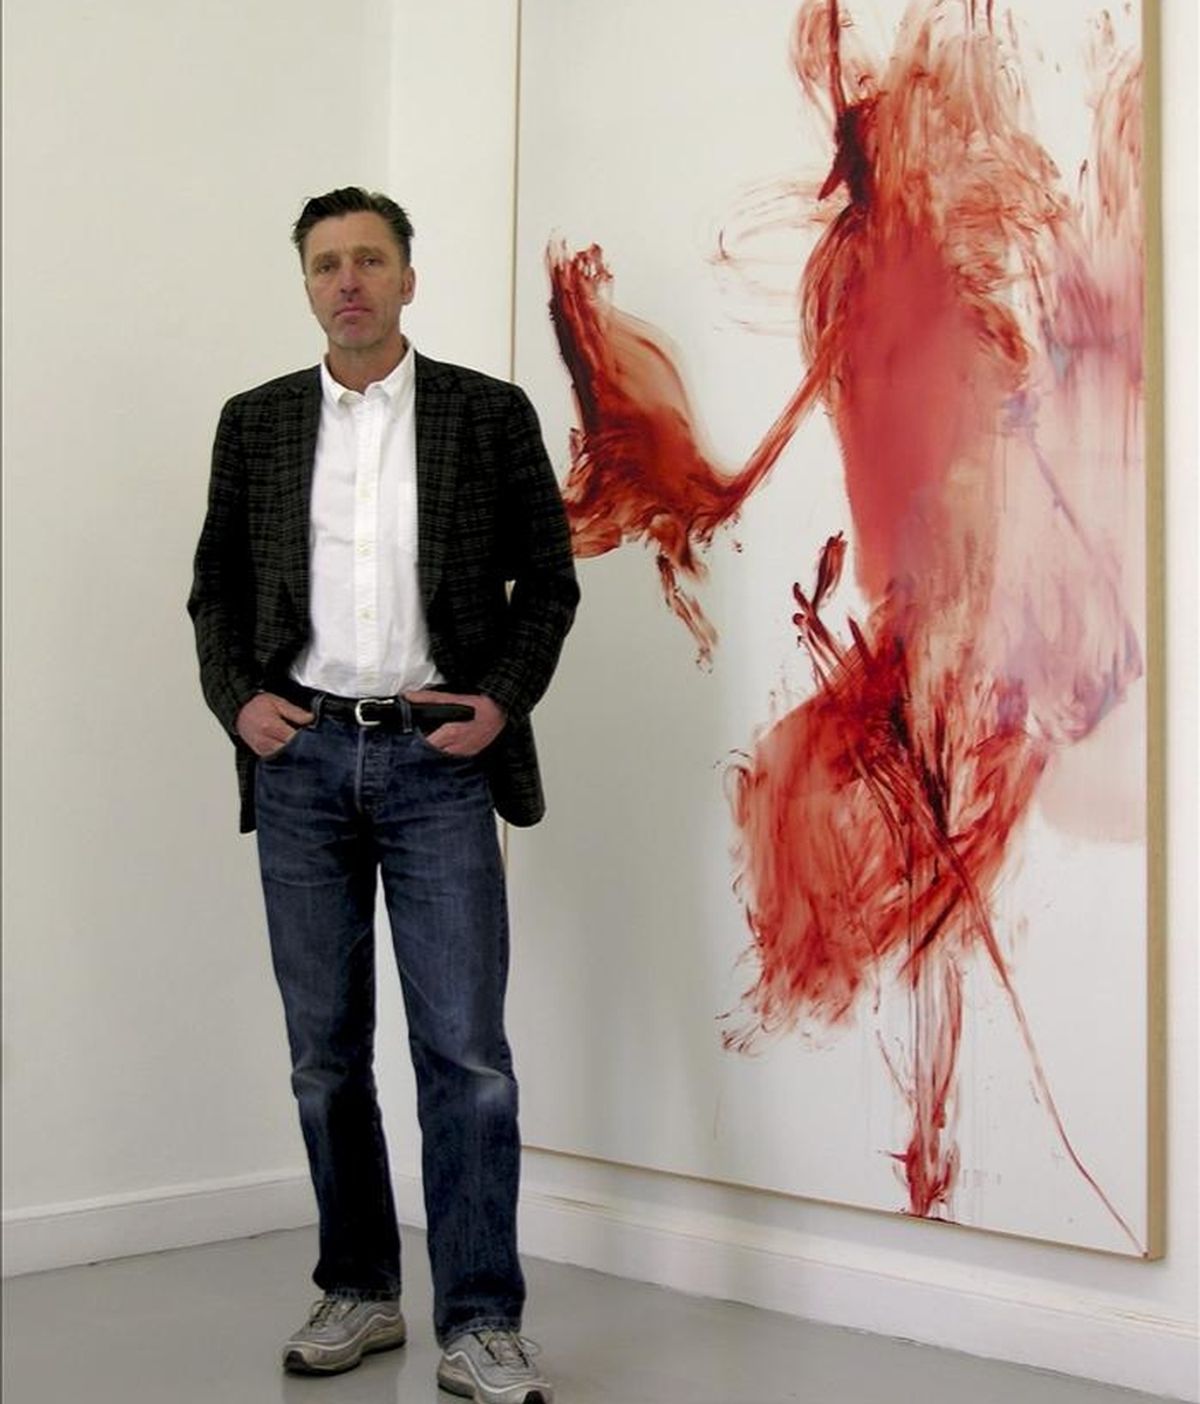 El artista Albert Oehlen durante la entrevista que ha concendido hoy a la Agencia Efe con motivo de la inauguración hoy de la muestra de su serie "H.A.T." en la galería Juana de Aizpuru. EFE